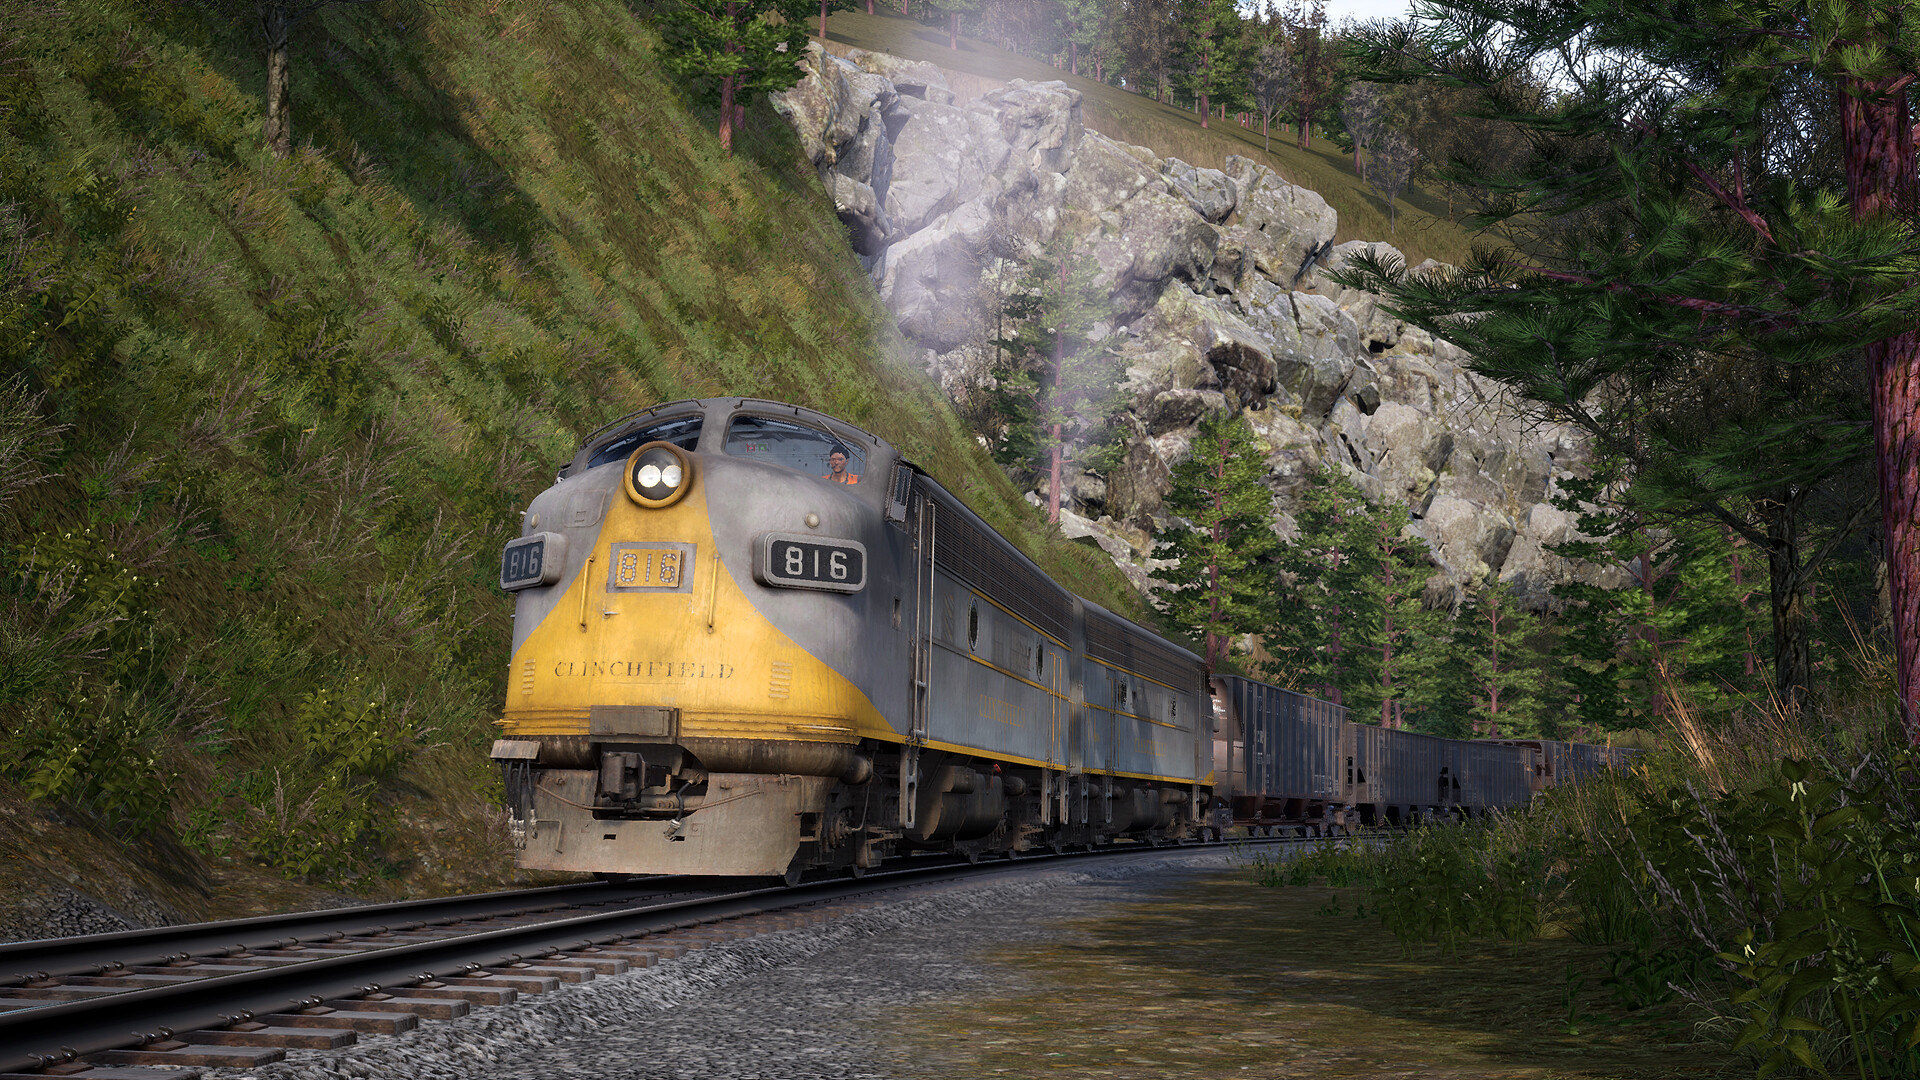 Train Sim World - Clinchfield Railroad - Elkhorn - Dante Route Add-On DLC Steam CD Key 1.25 usd